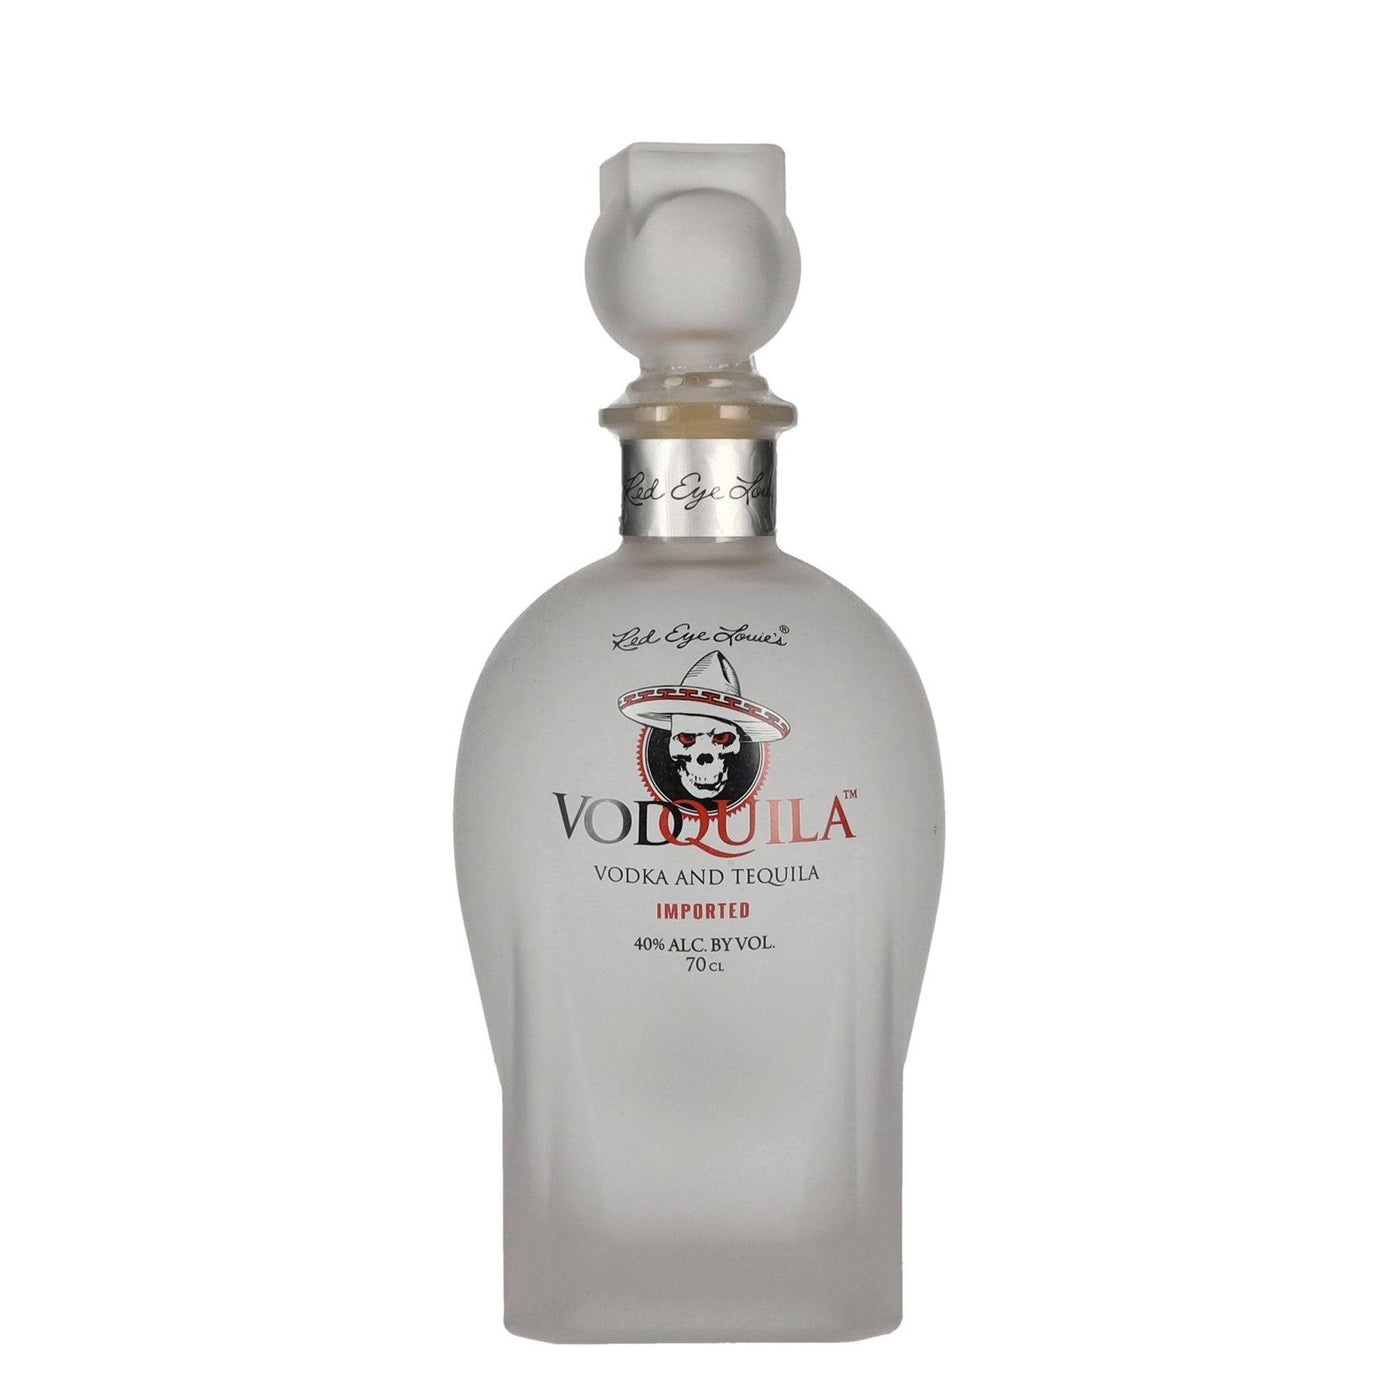 Vodquila Vodka - Spiritly